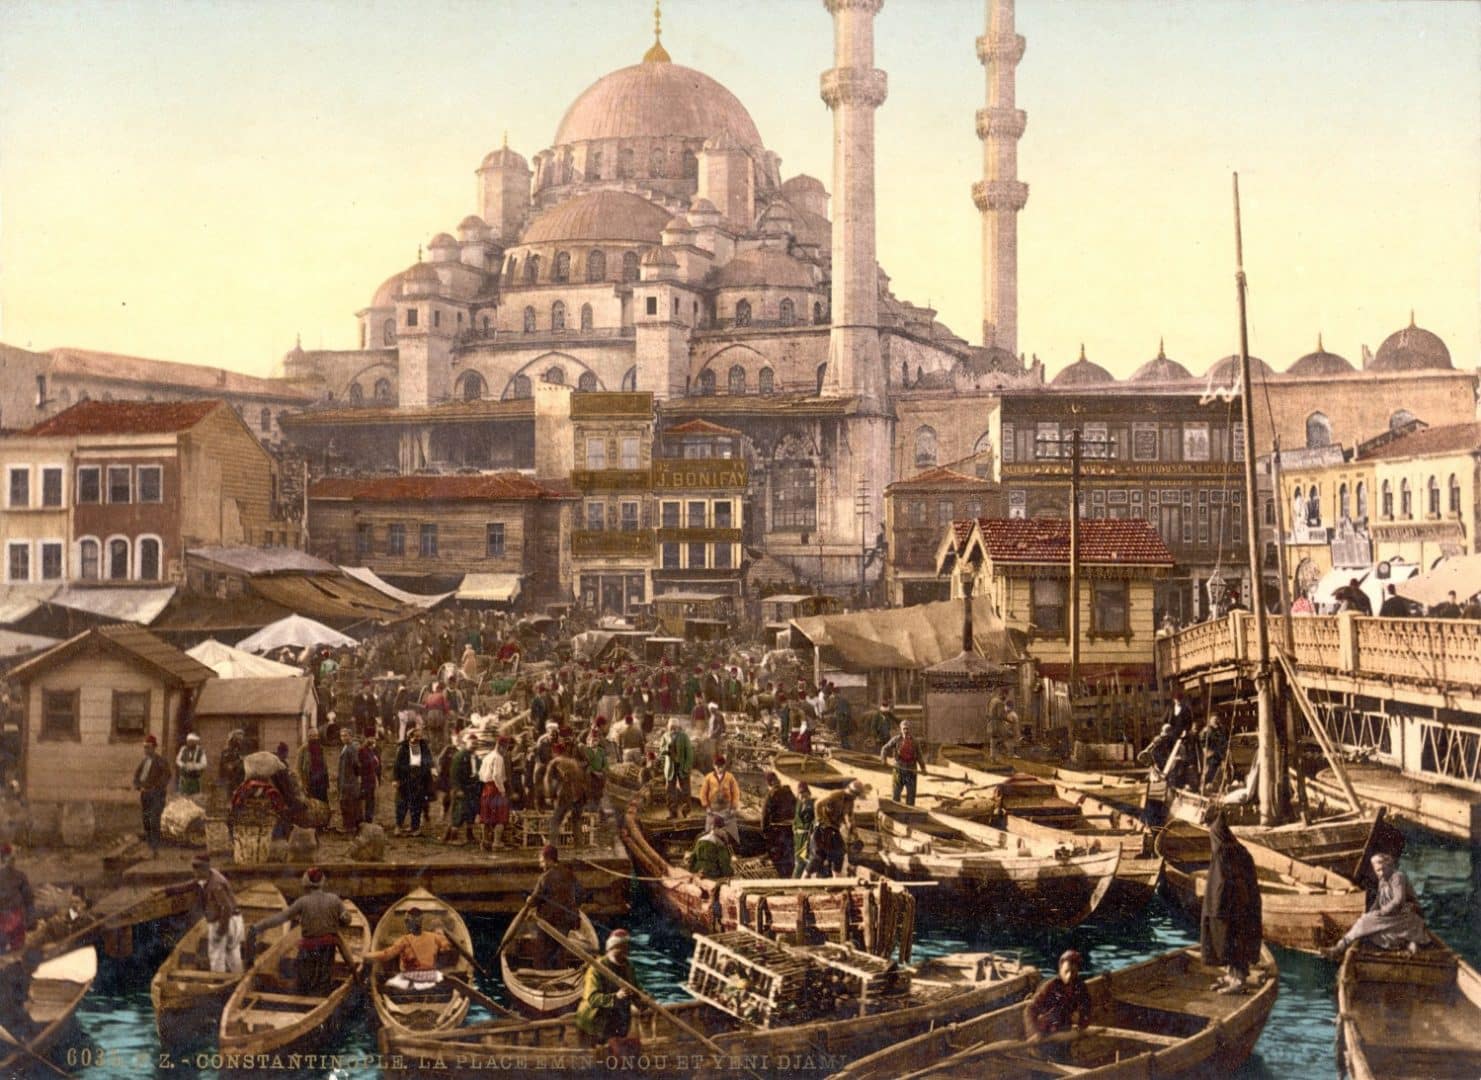 Império Otomano - a história da maior potência islâmica global